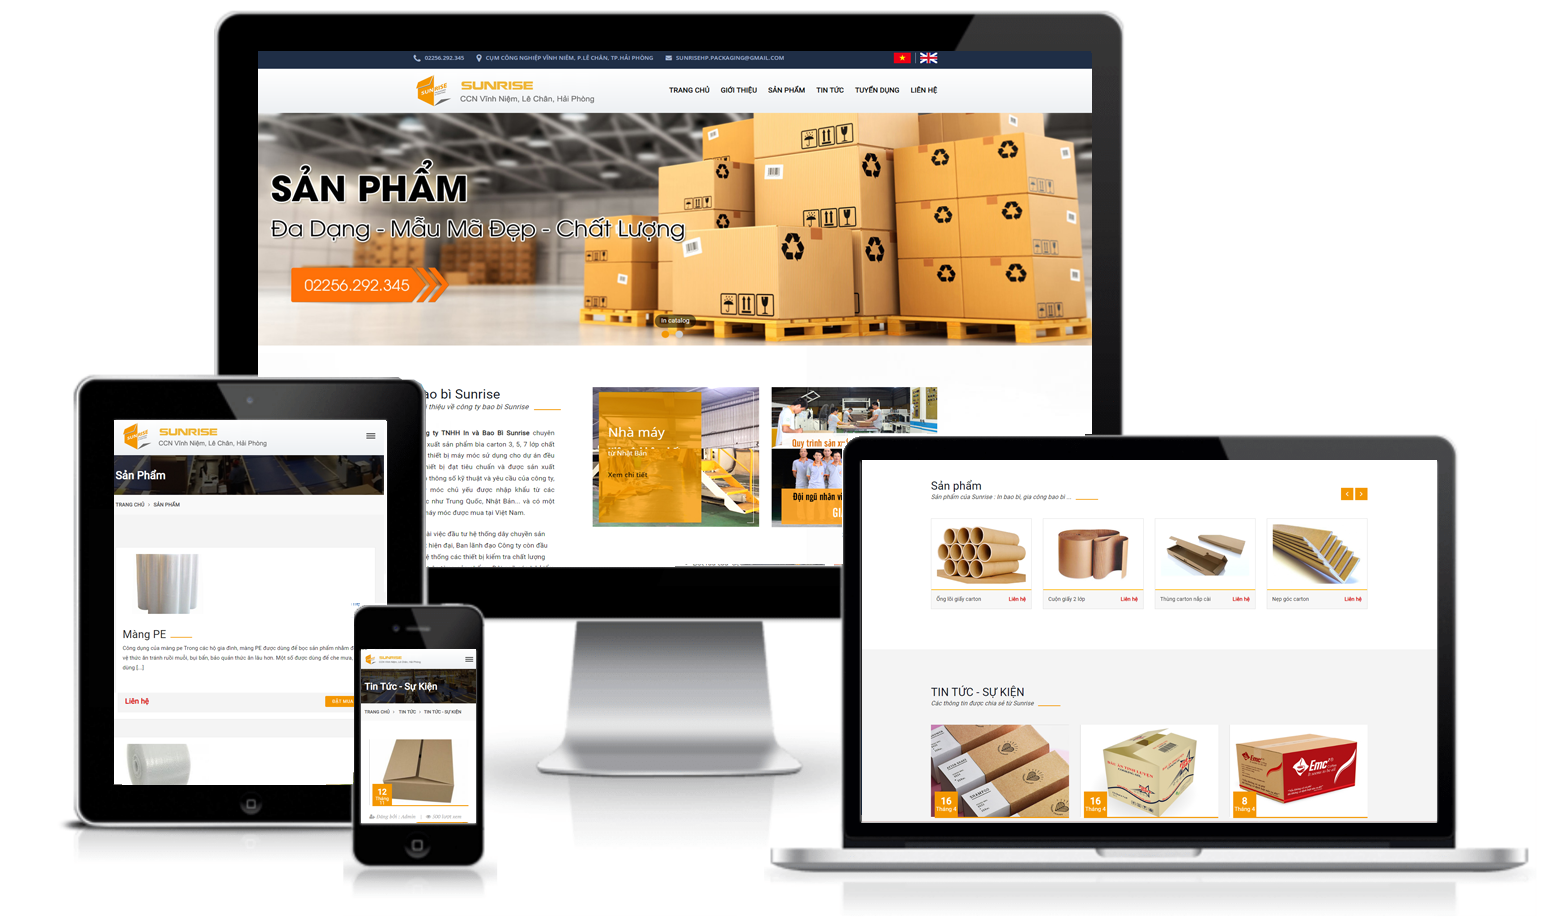 Thiết kế website công ty sản xuất bao bì sản phẩm chuyên nghiệp, chất lượng tại Hải Phòng